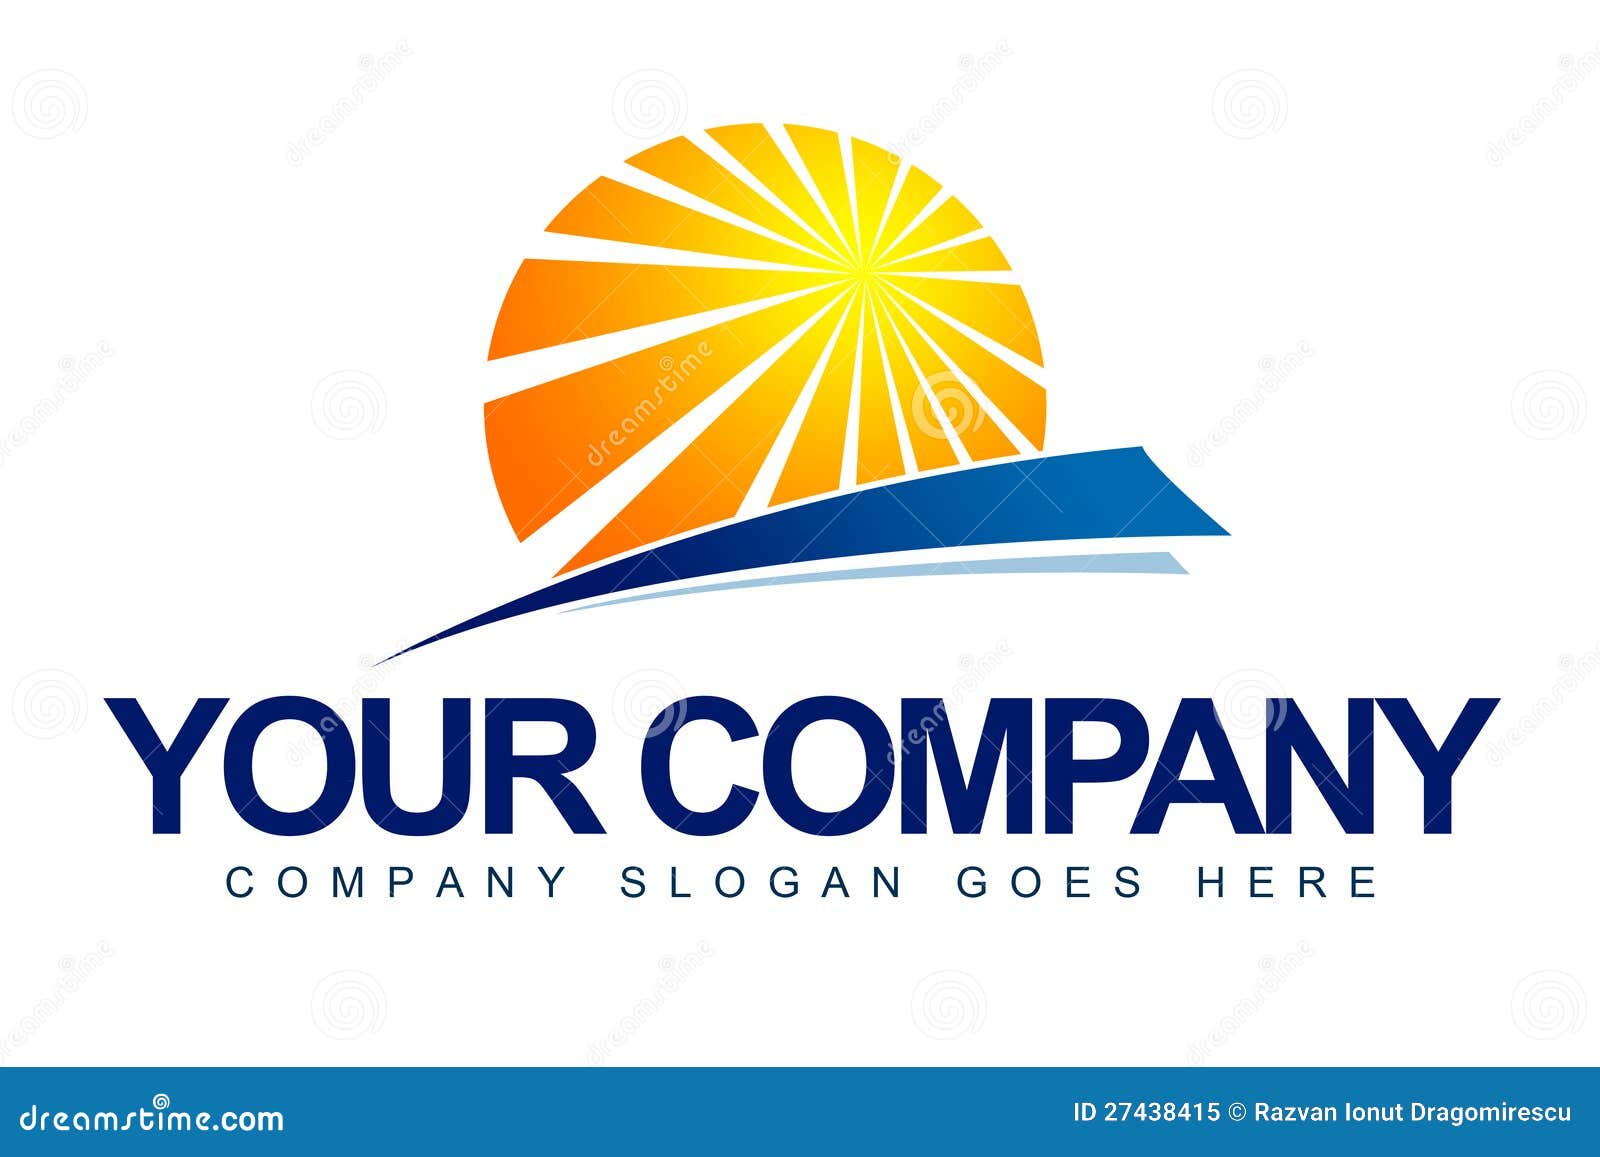 Company Logos With Sun Logo Design Ideas